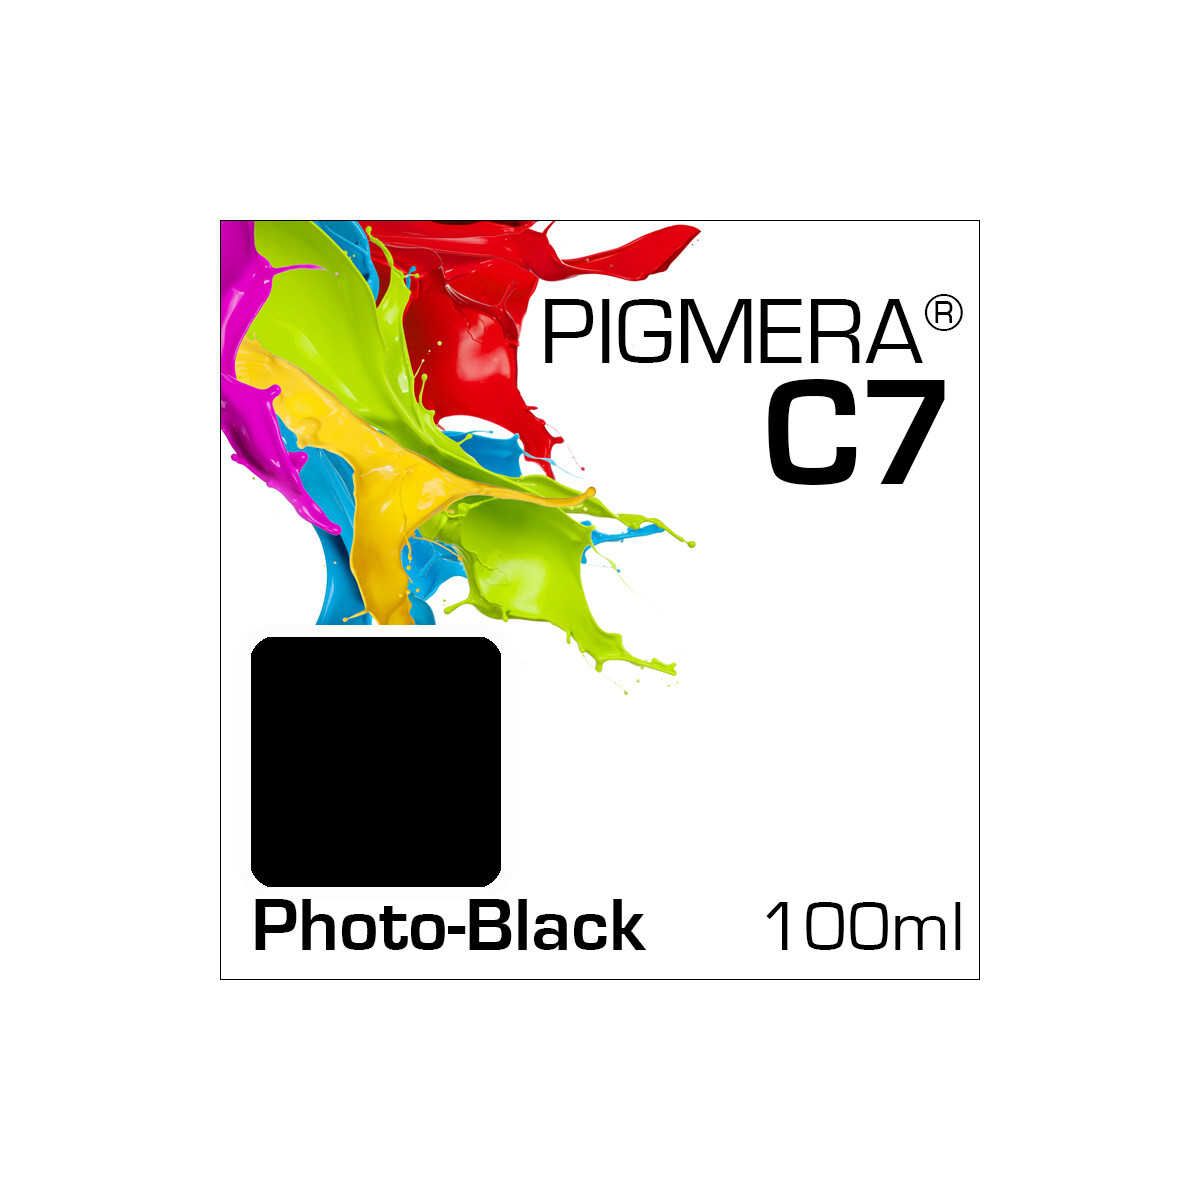 Pigmera C7 Bottle 100ml Photo-Black (Abverkauf)